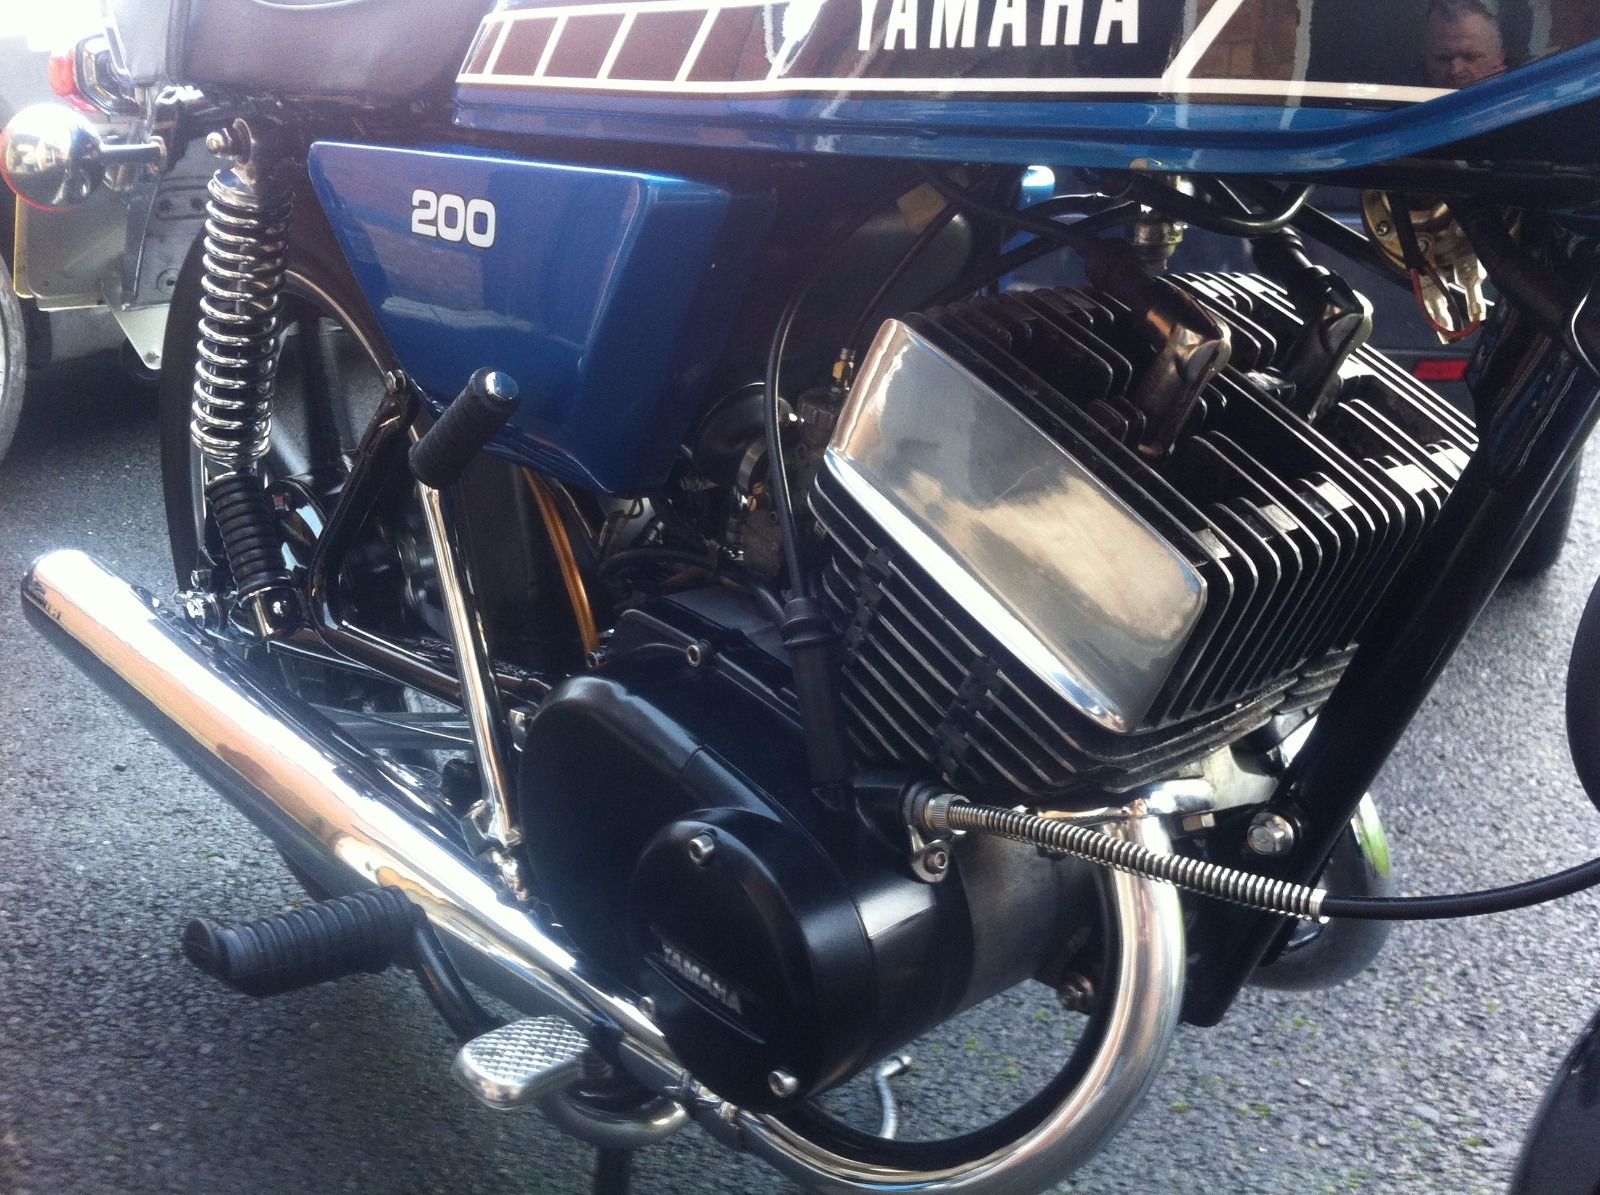 Yamaha RD 200 1979 photo - 3